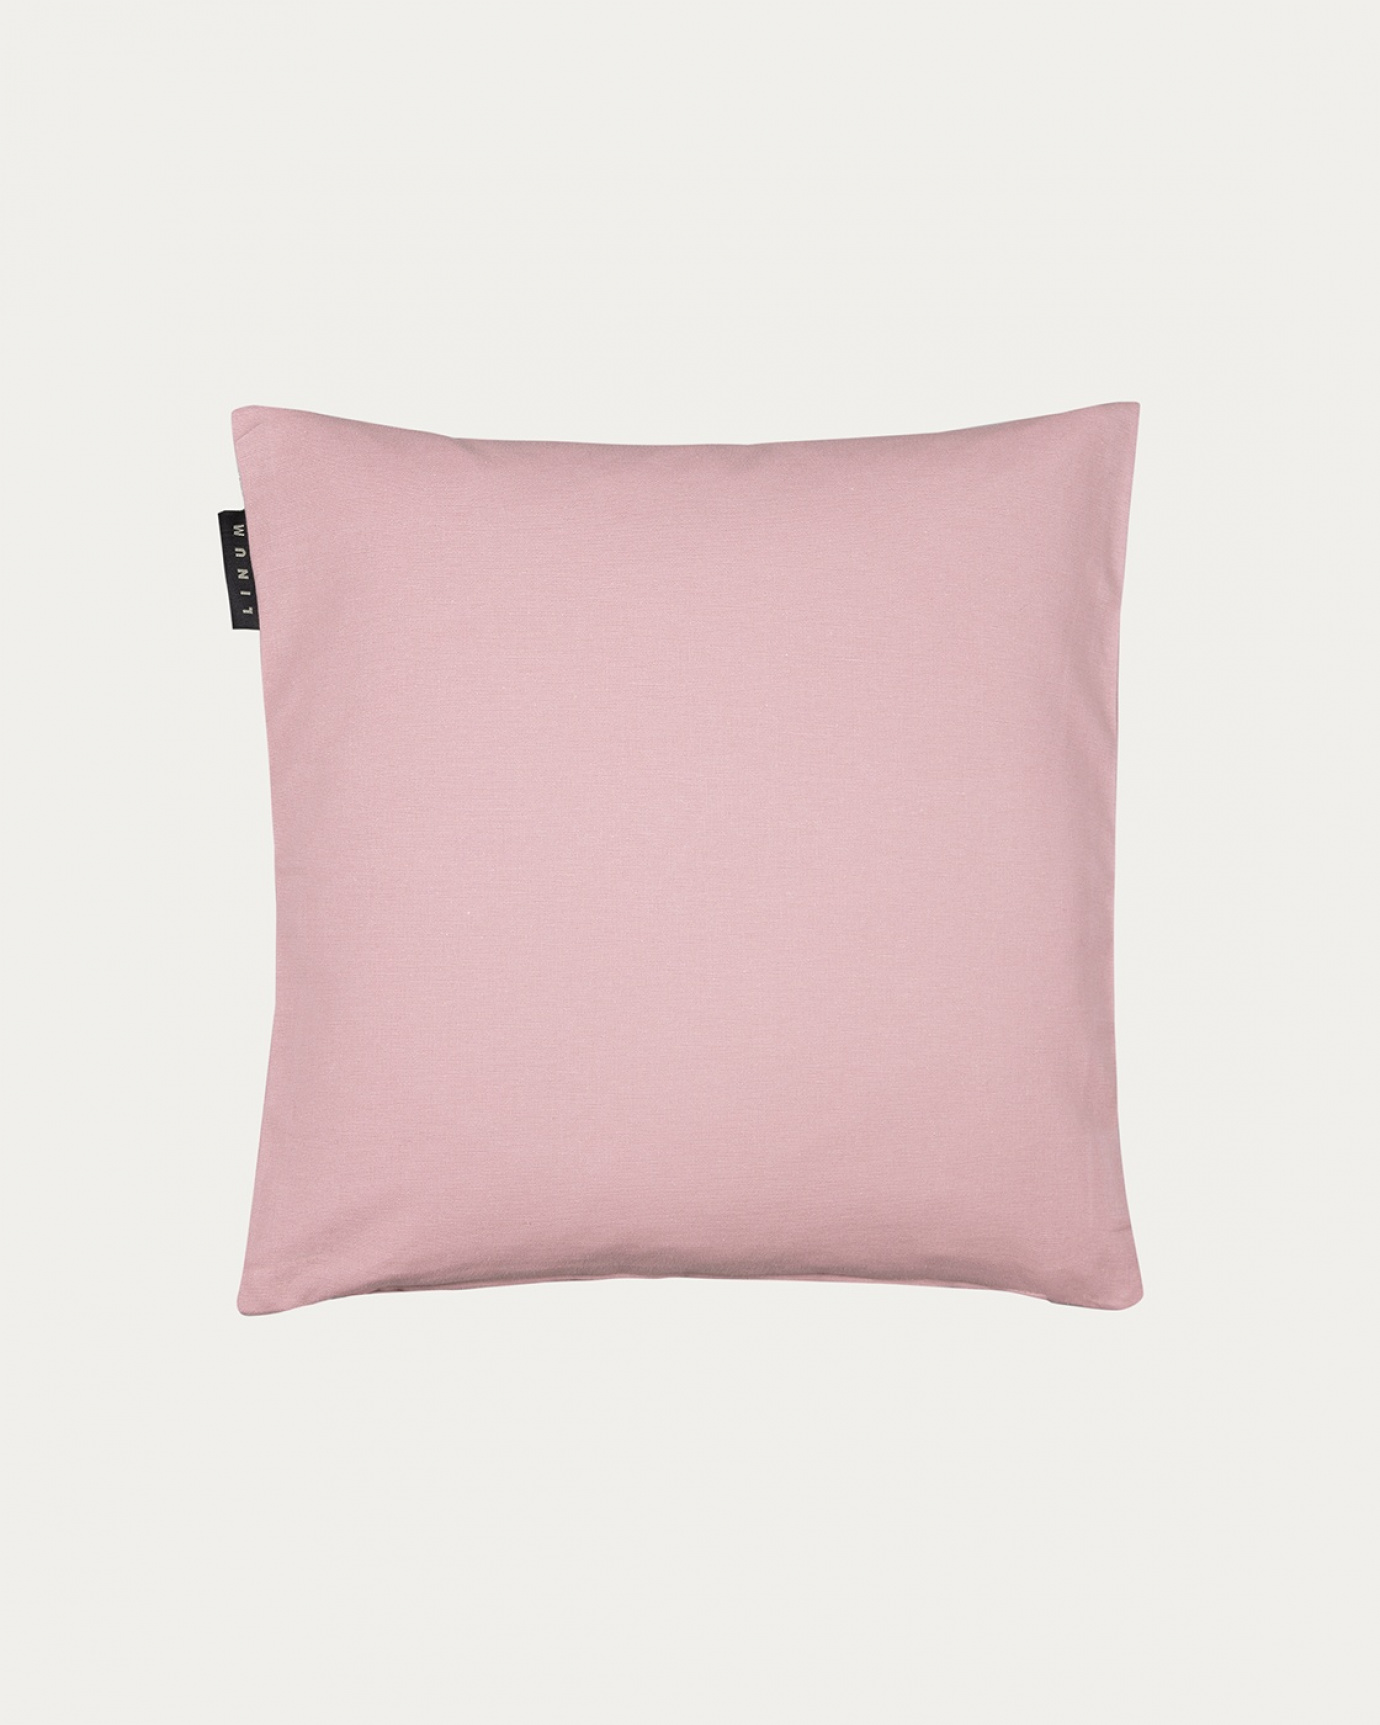 Image du produit housse de coussin ANNABELL rose poudré en coton doux de LINUM DESIGN. Taille 40 x 40 cm.